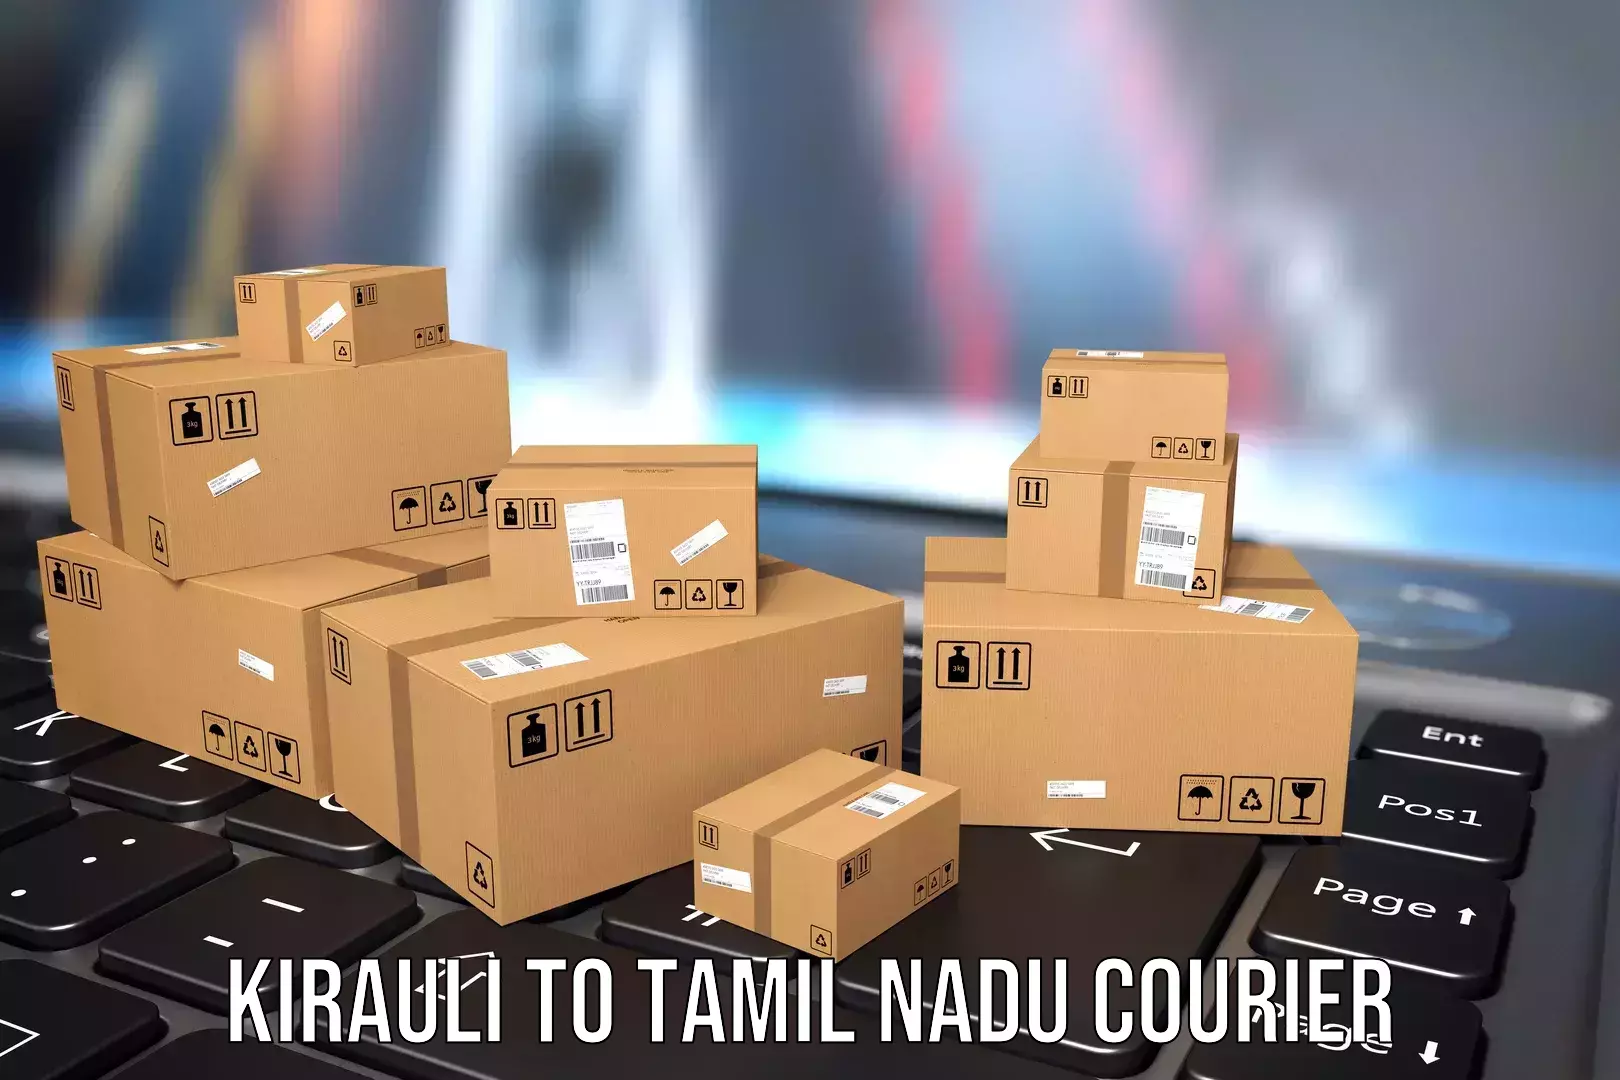 Luggage transport operations Kirauli to Chennai Port